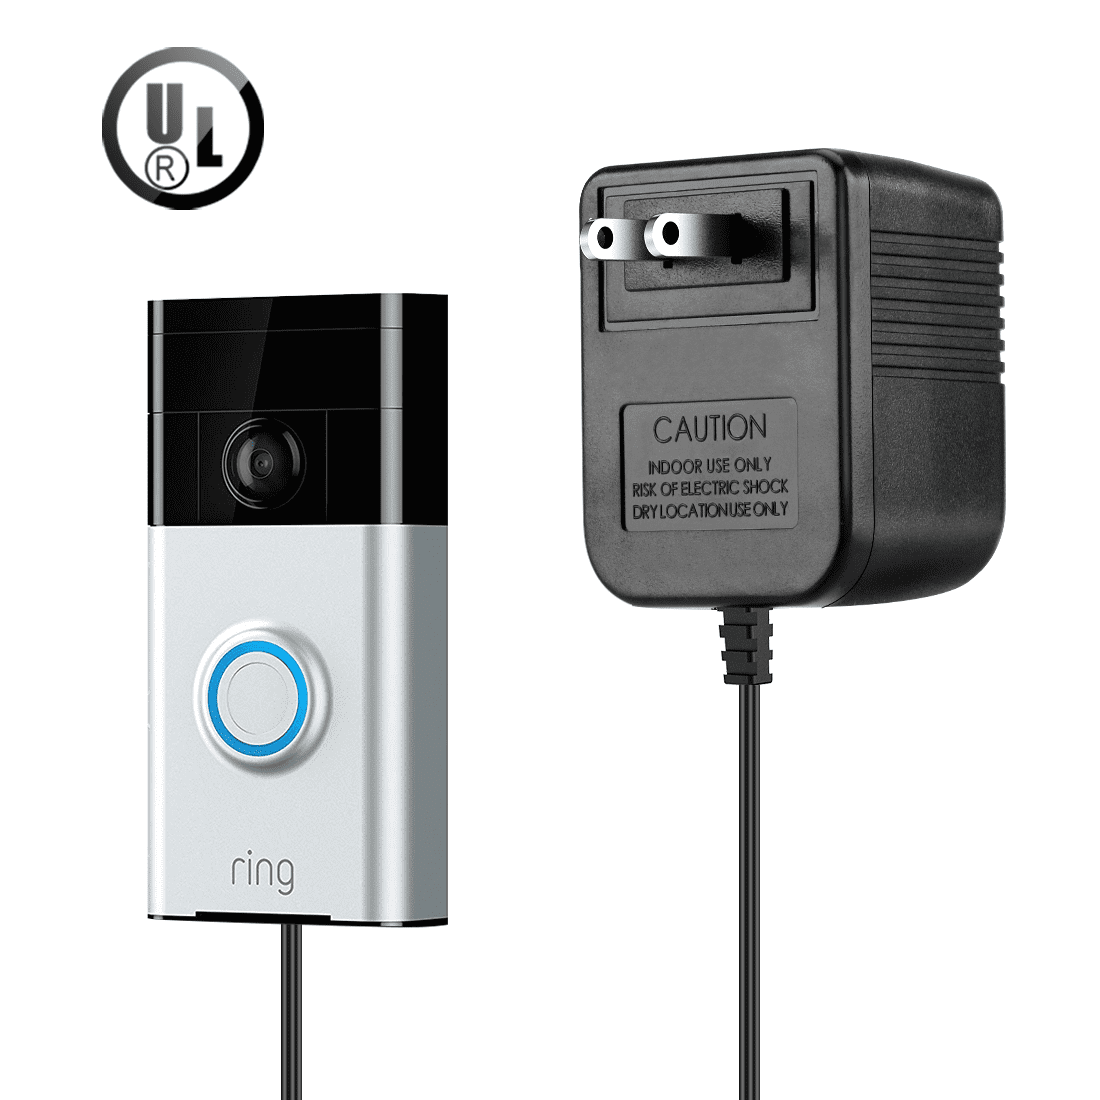 doorbell power adapter